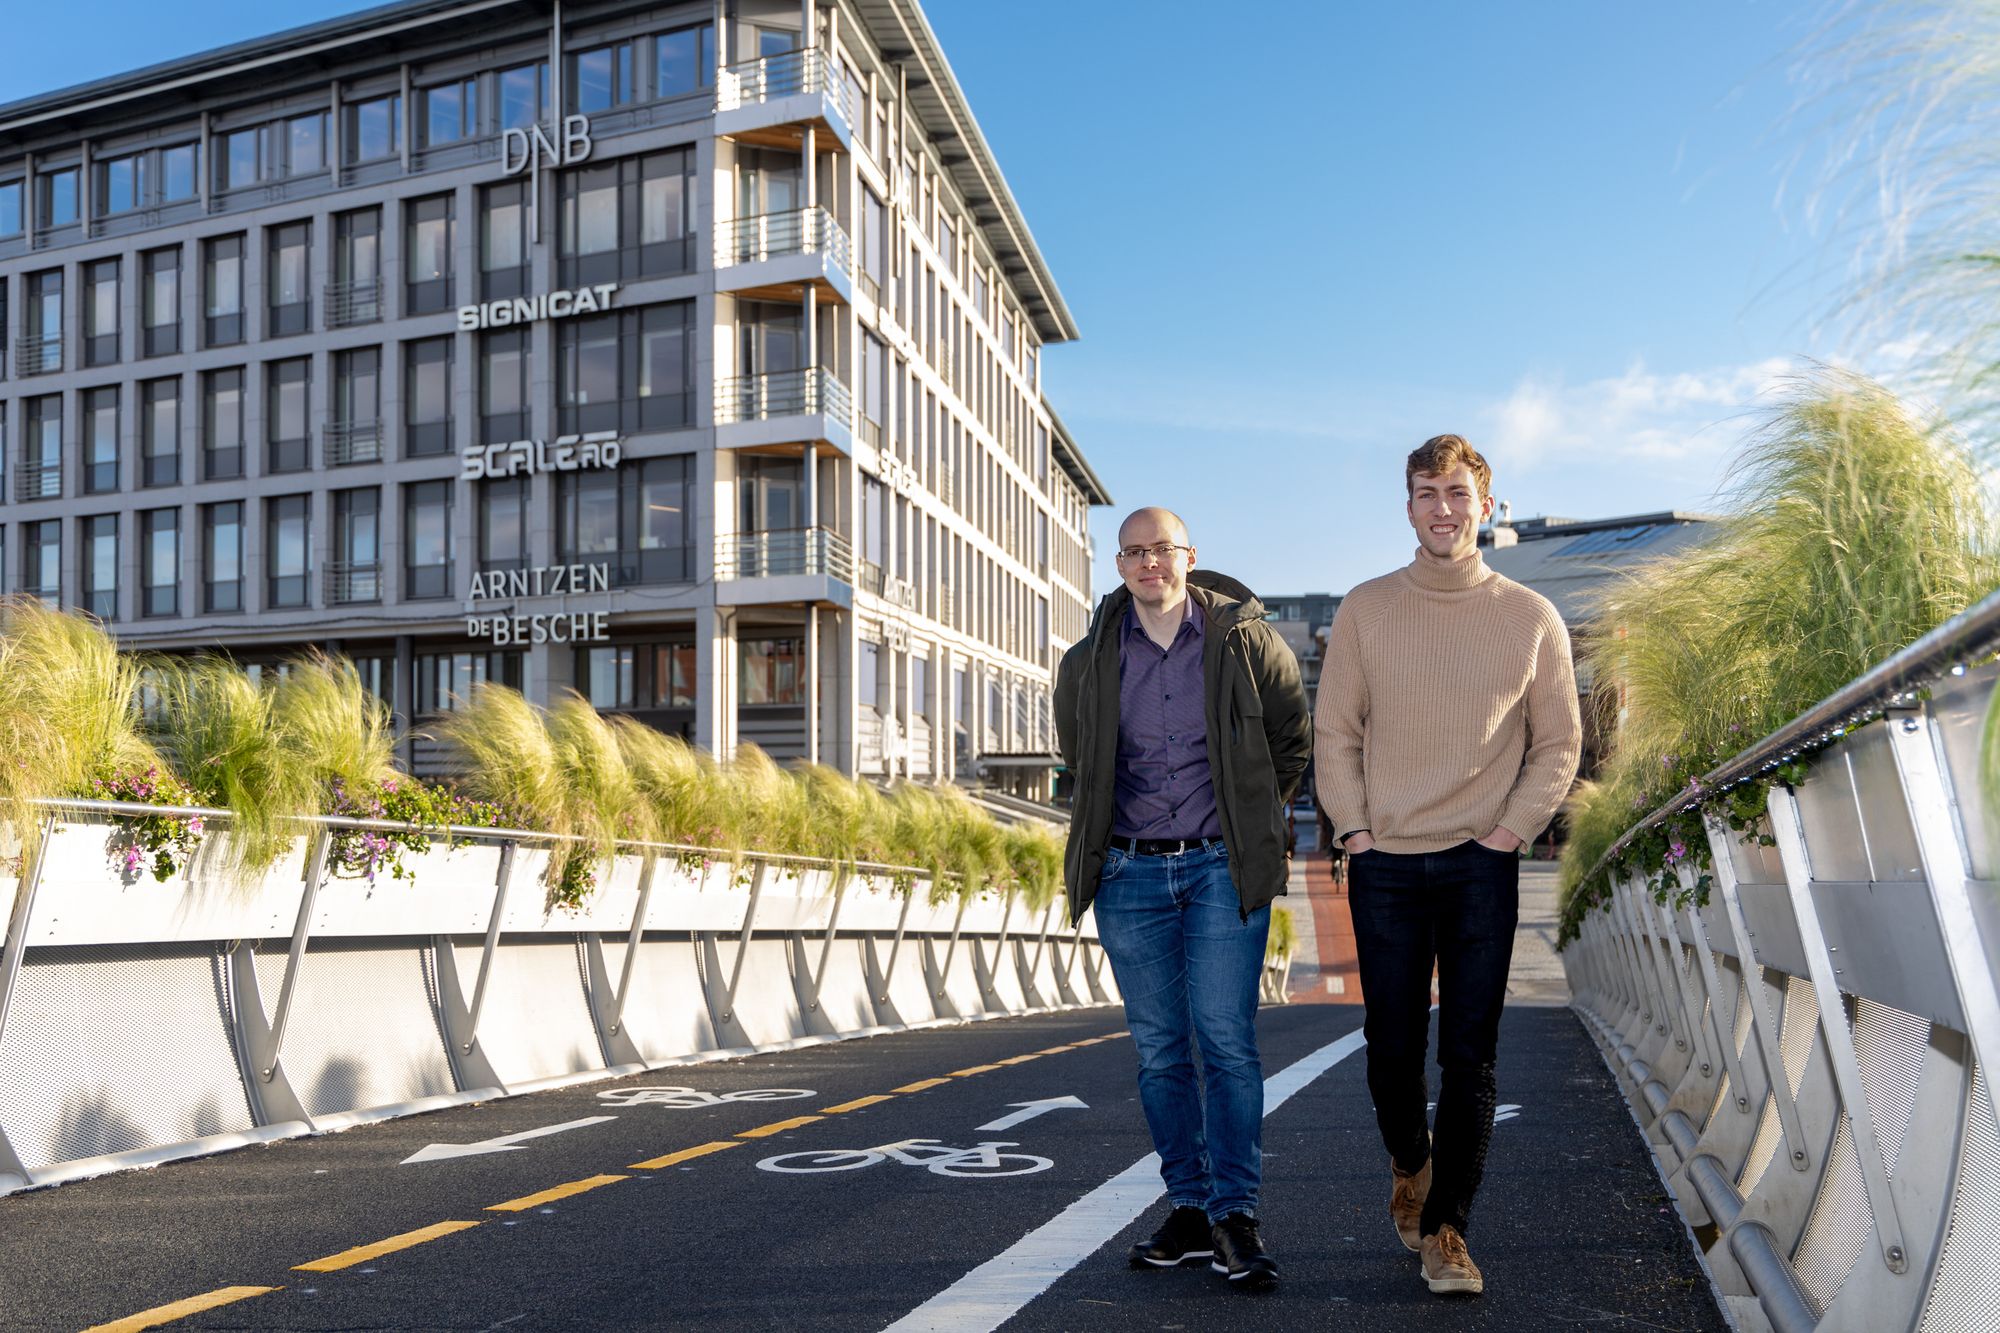 Ole Martin og Marius markerer starten på storbankens tech-satsing i Trondheim